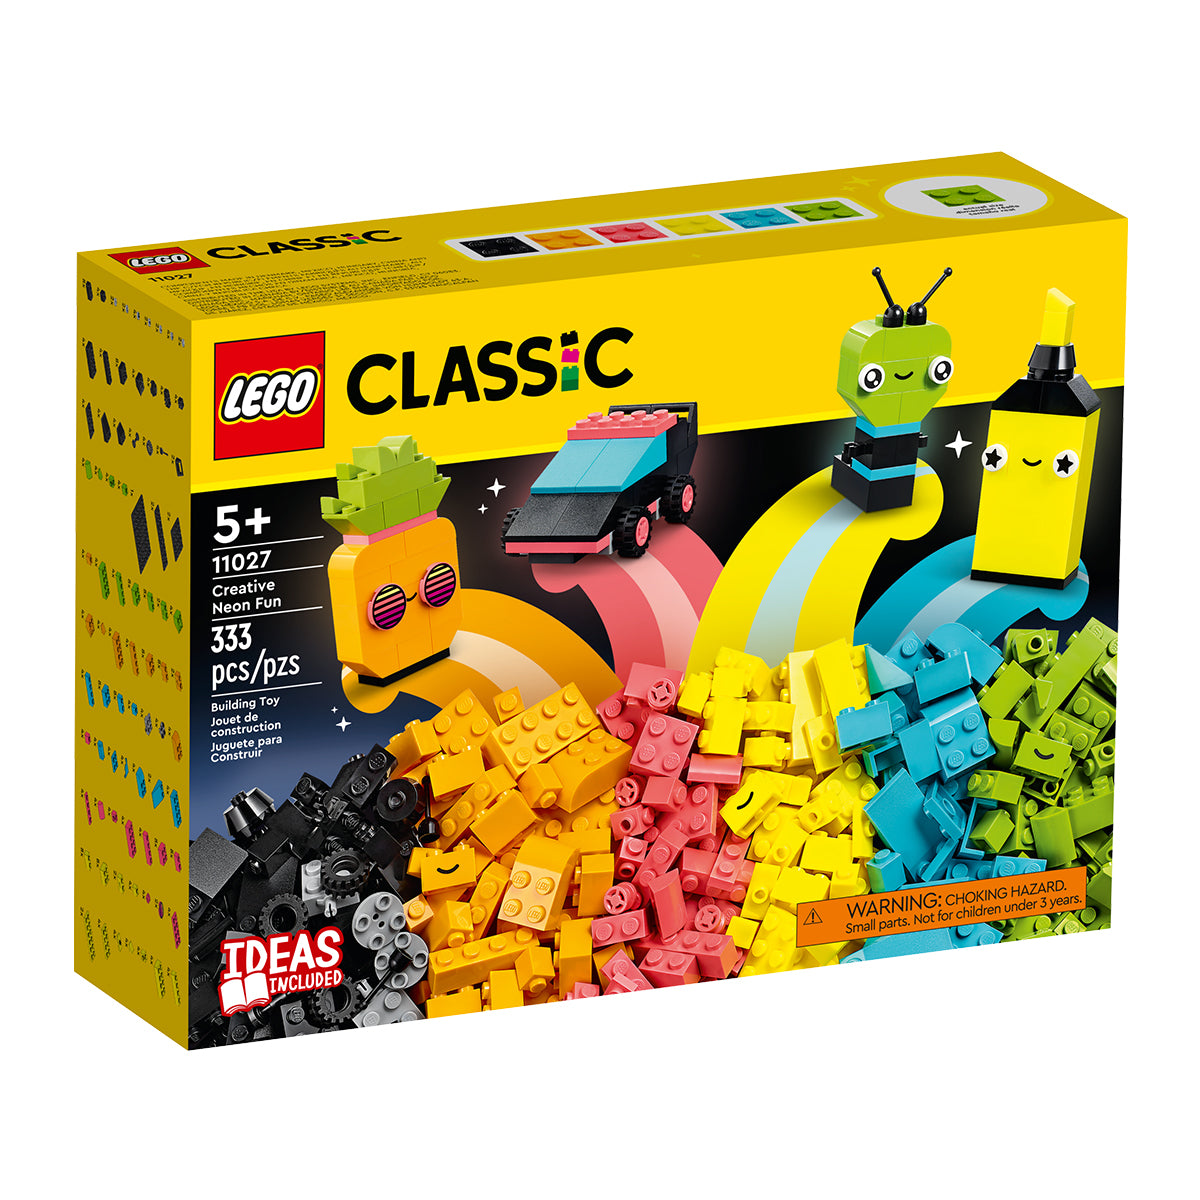 LEGO Classic - Creative Neon Fun 11027